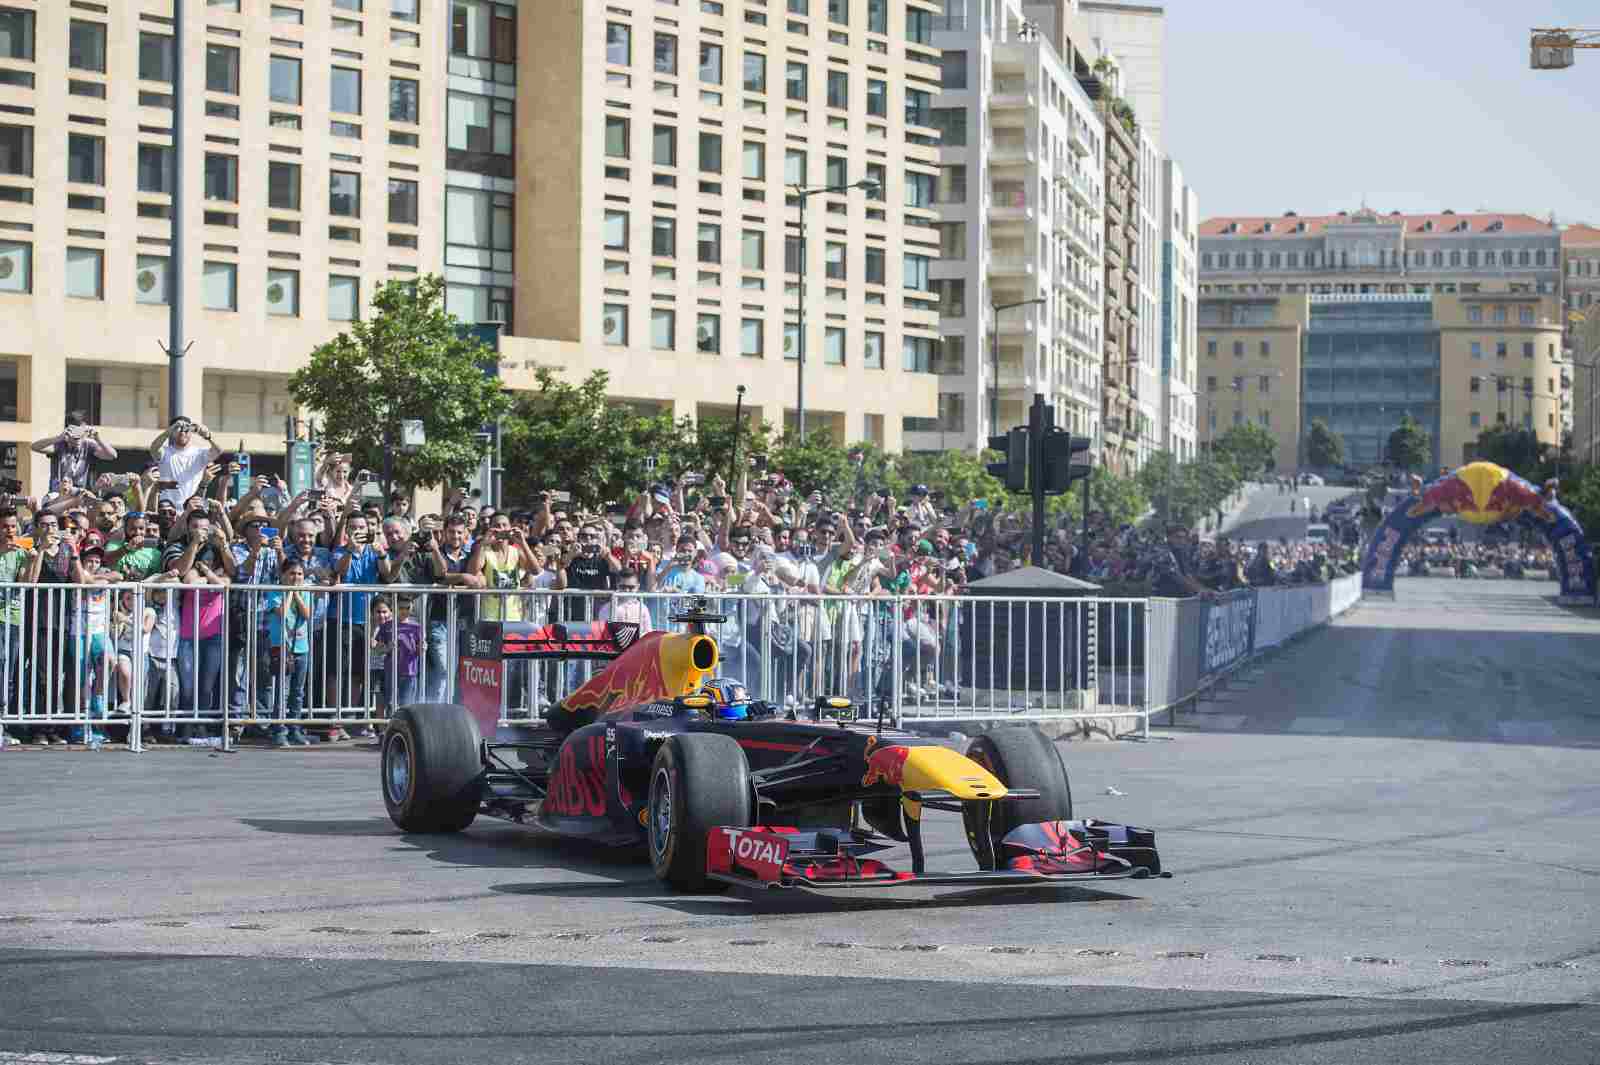 No início dos anos 2000, houve a intenção de construir um circuito de corrida em Beirute, com o objetivo de atrair um Grande Prêmio de Fórmula 1 para a região. No entanto, os planos nunca foram concretizados. A área atingida pela explosão, inclusive, foi onde ocorreu um demonstração da Red Bull Racing, em 2016, por Carlos Sainz, atualmente na McLaren.